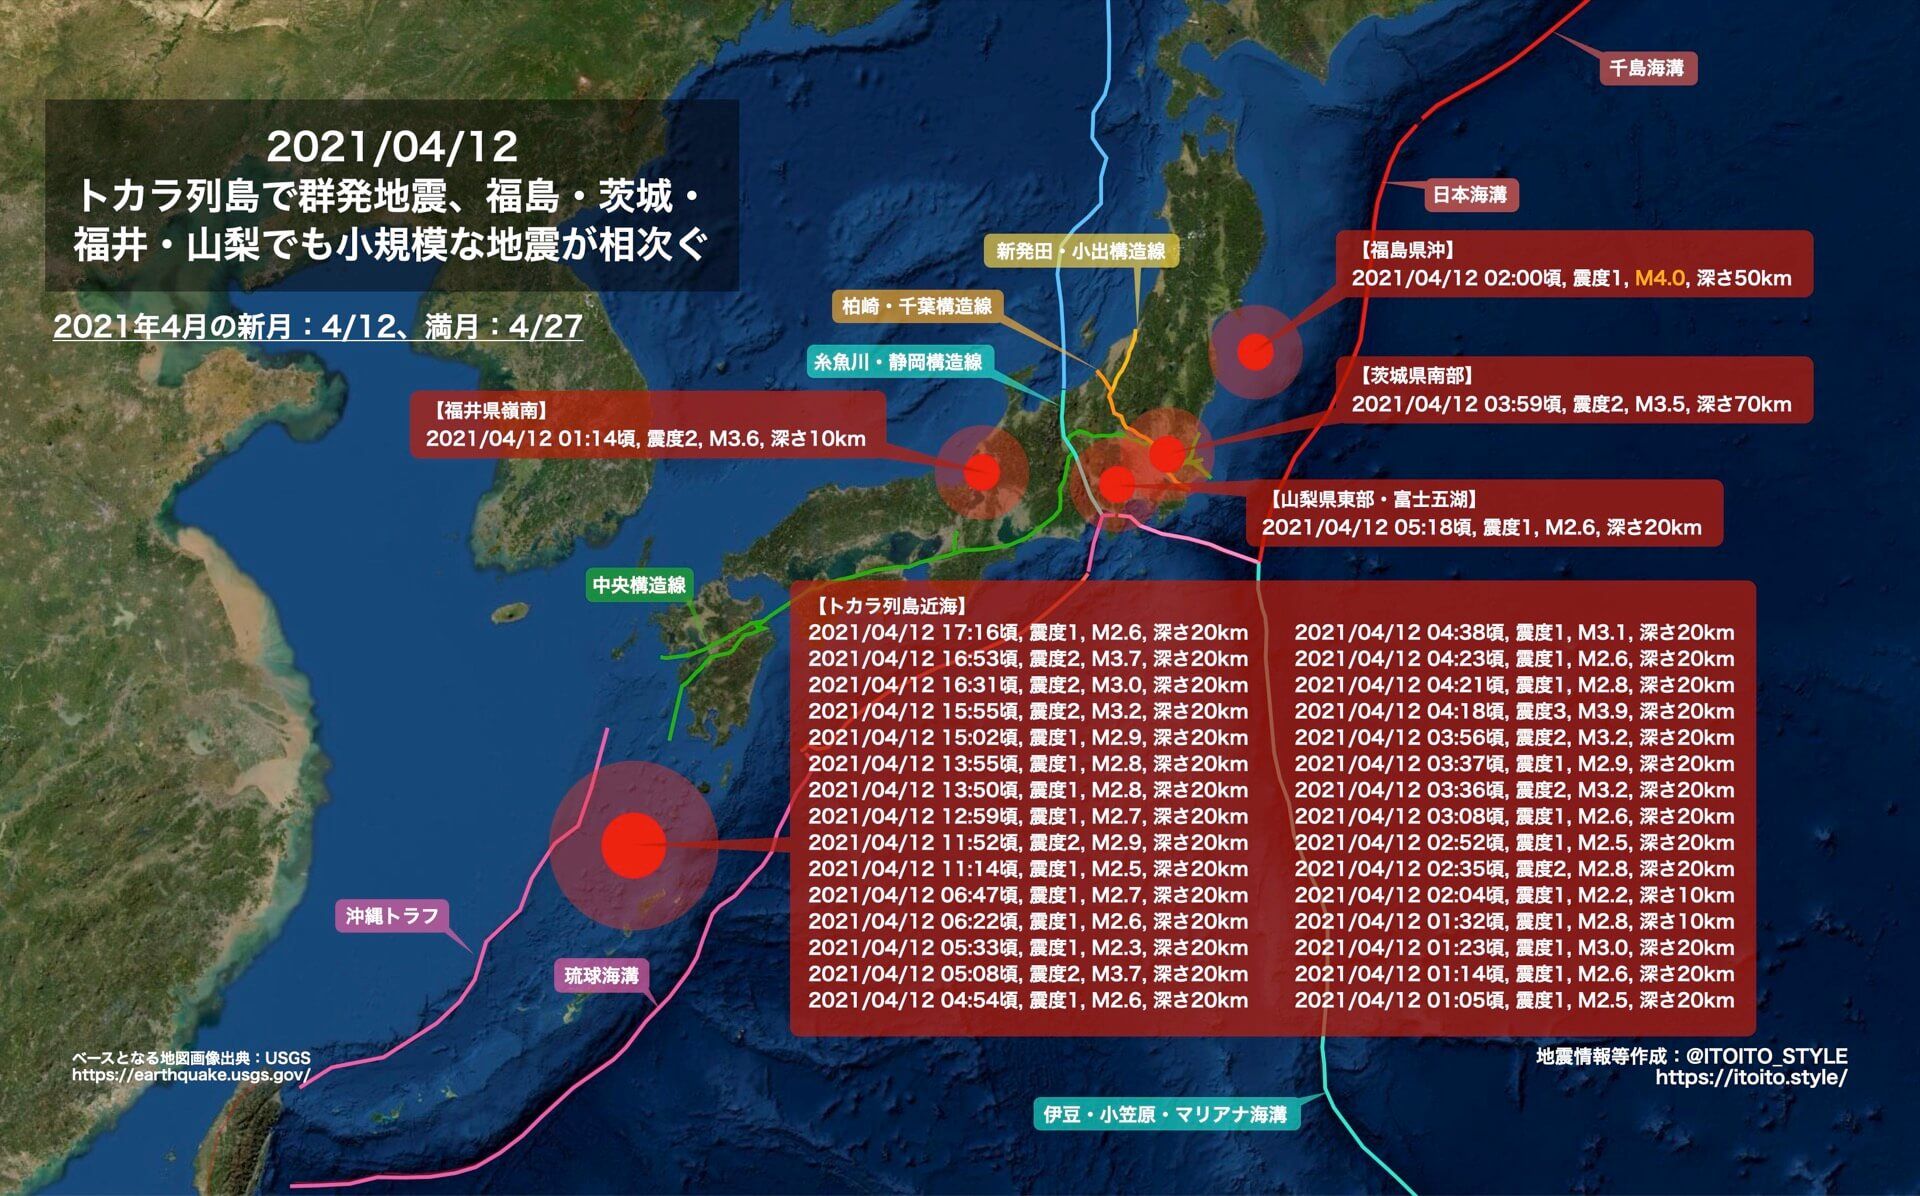 日本突然频繁地震 难道是核废水引起 分析 没有必然联系